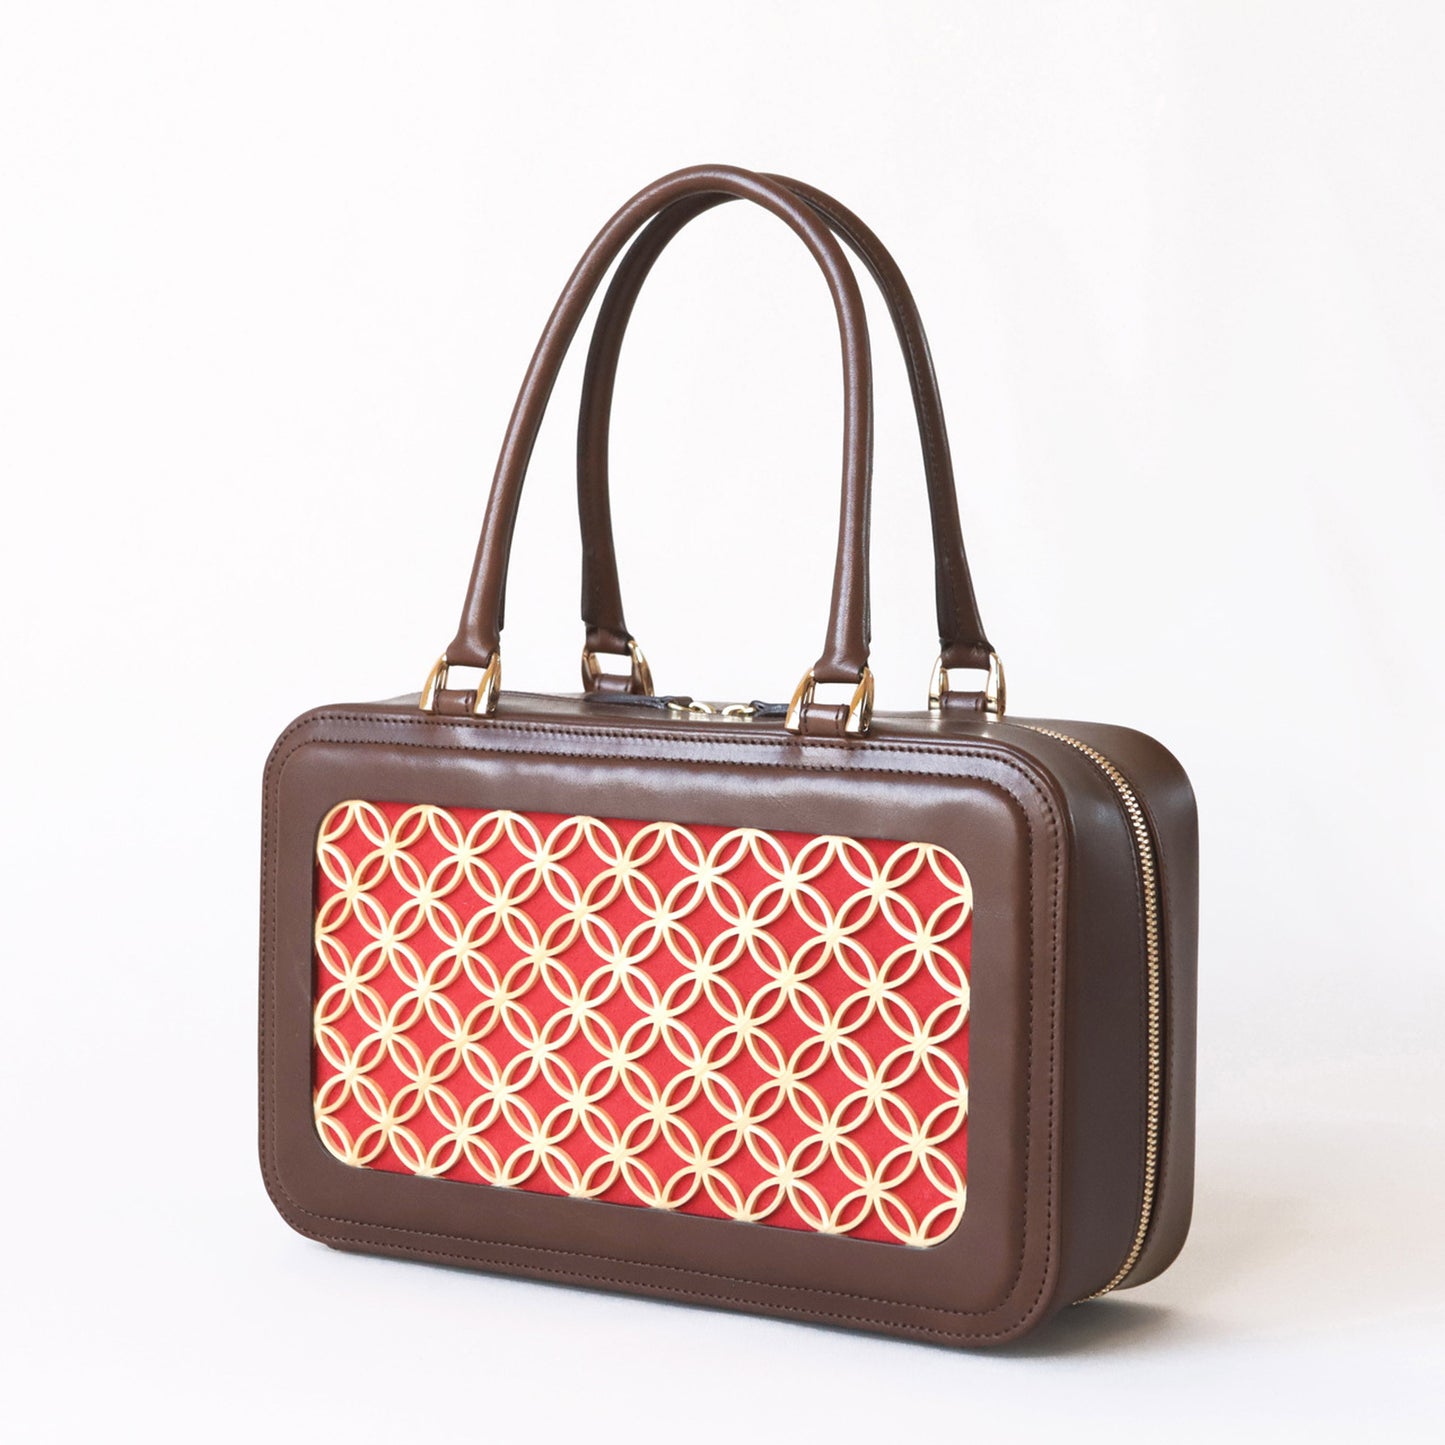 Hanakumiko handbag / Brown × Red